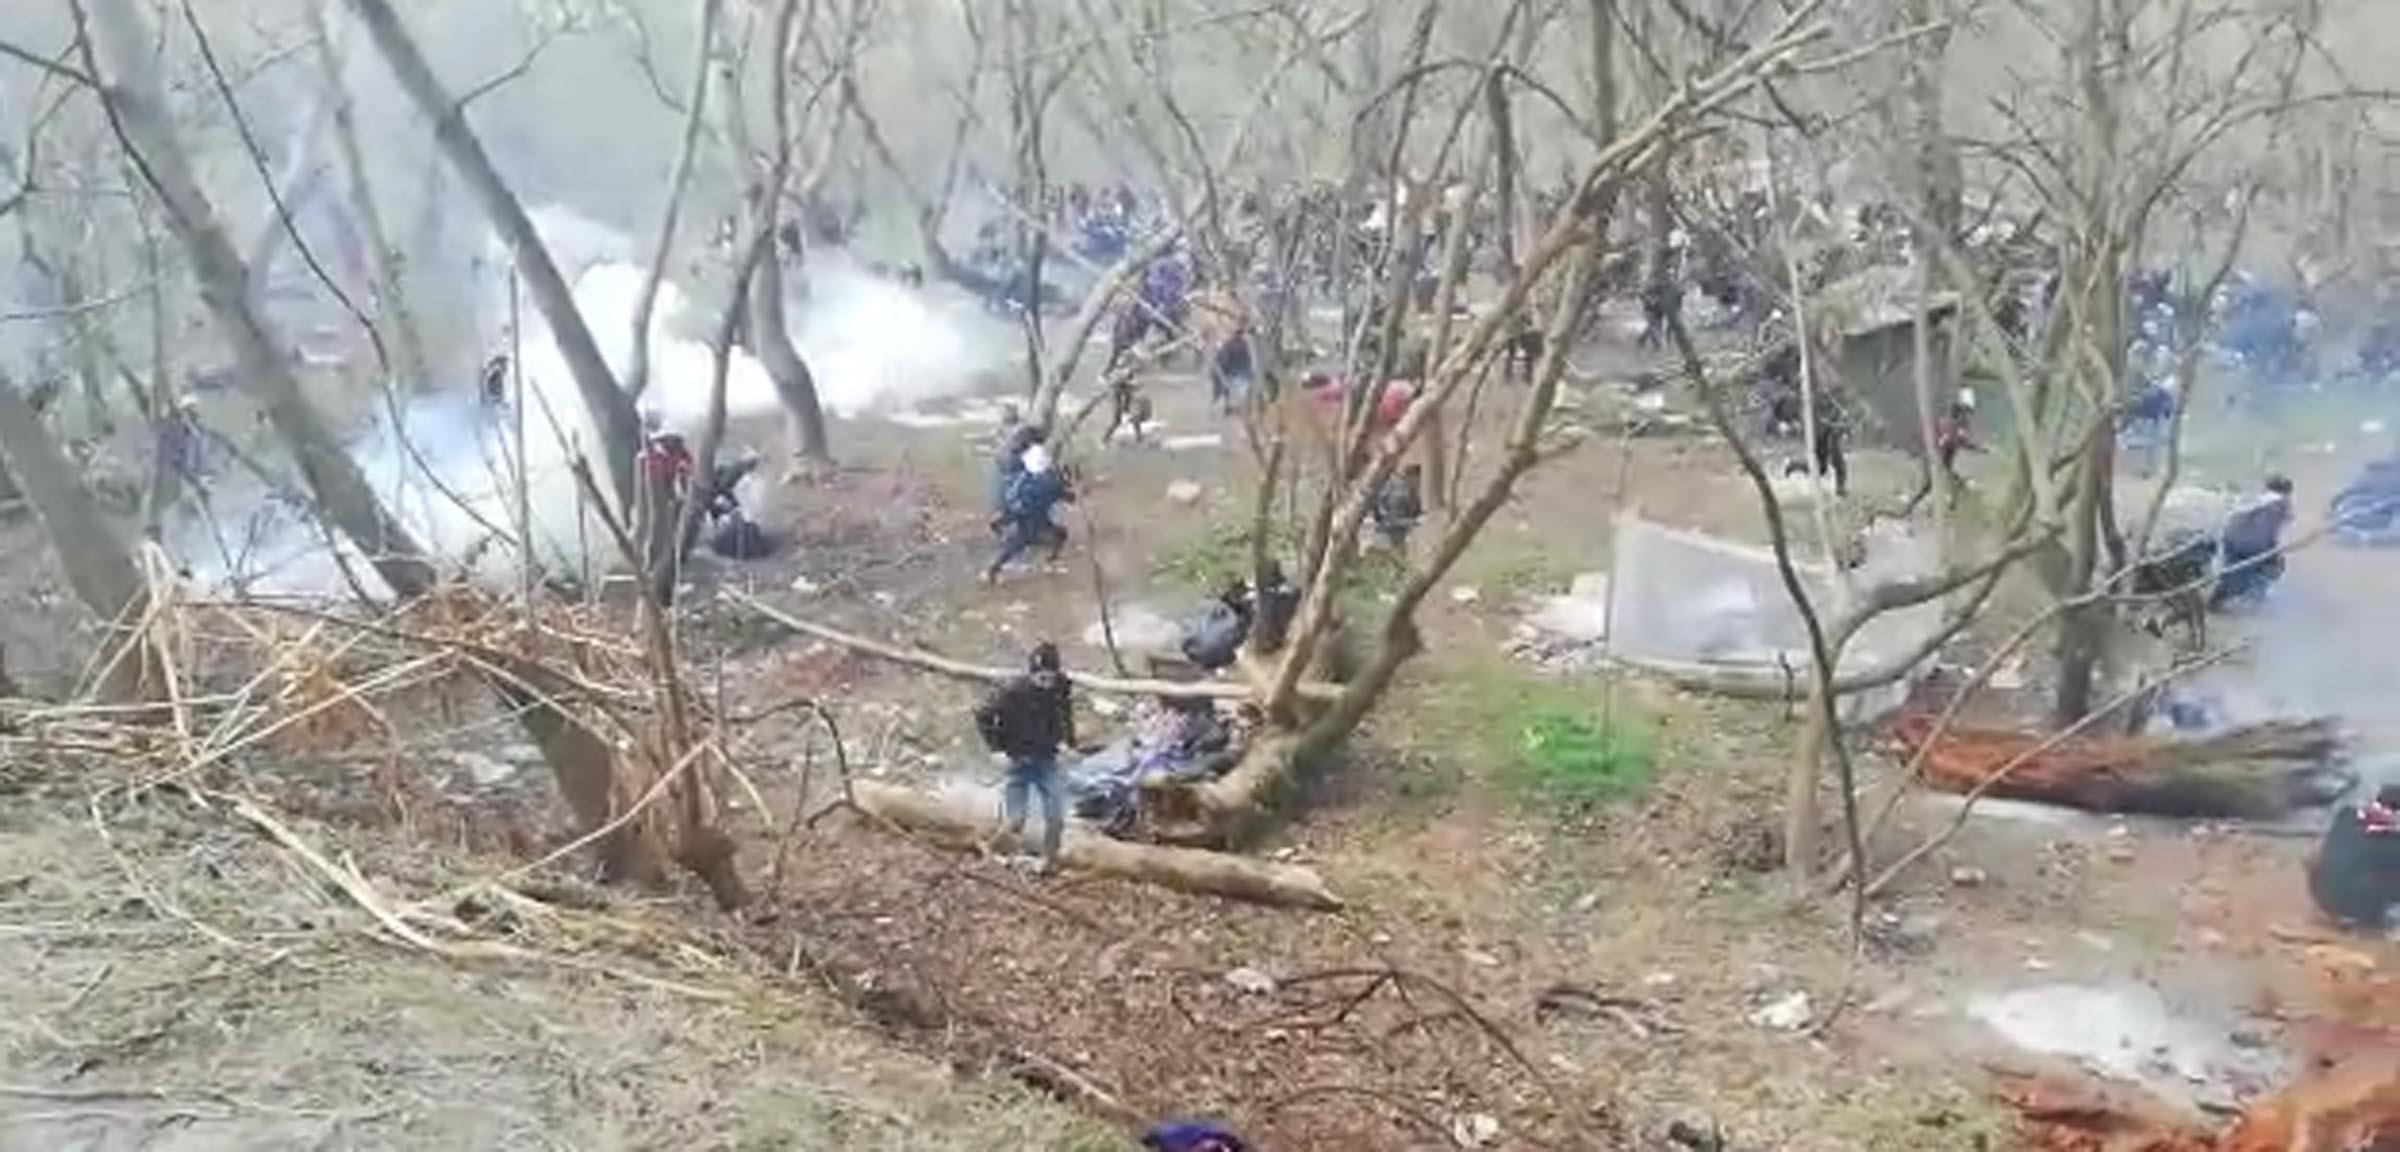 Yunan askerleri sınıra giden göçmenlere gaz bombası attı